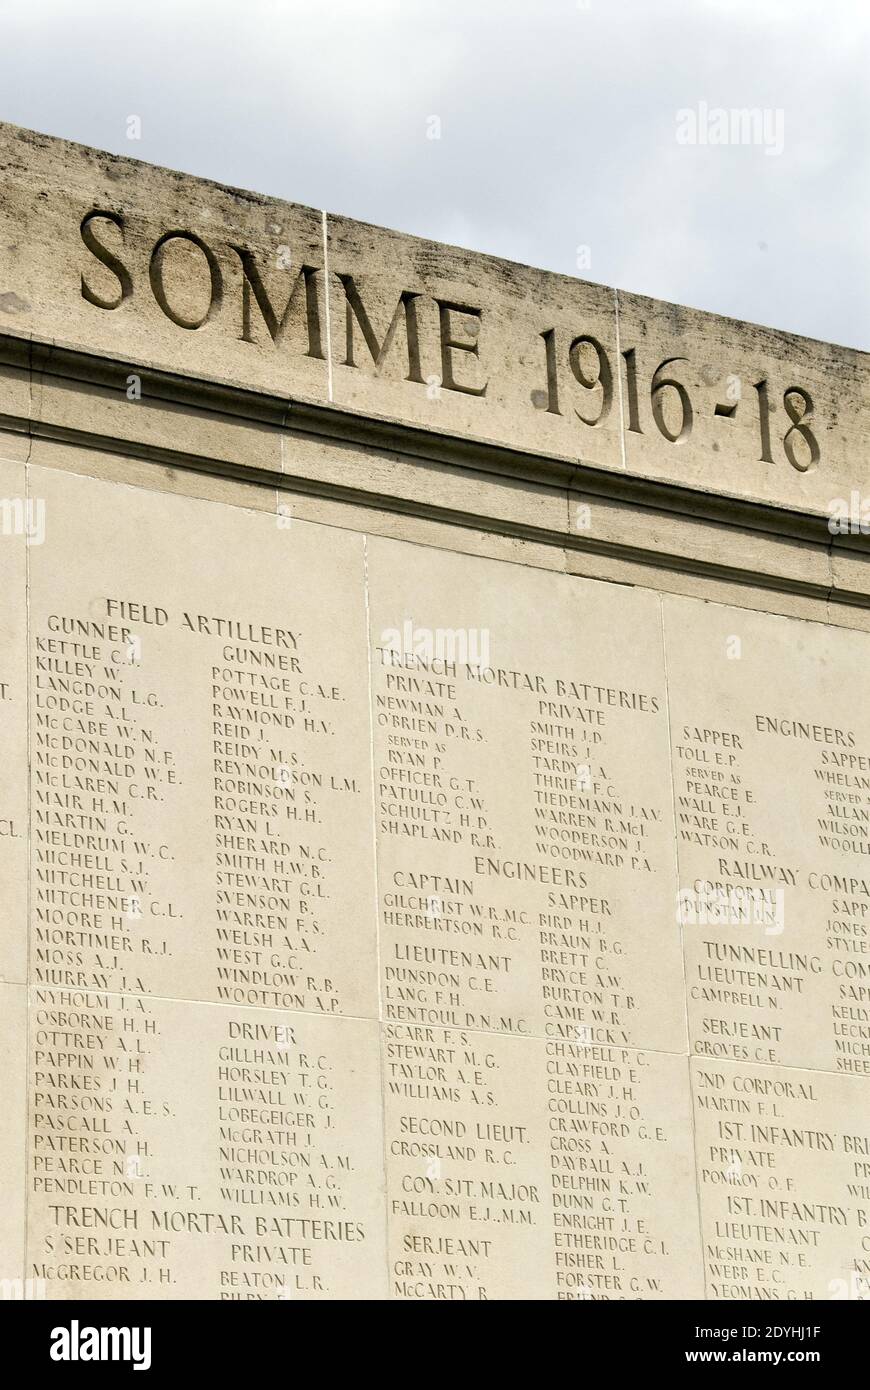 An einer Wand sind Namen australischer Soldaten des 1. Weltkrieges aufgeführt, die kein Grab am Australian National Memorial, Villers-Bretonneux, Somme, Frankreich, kennen. Stockfoto